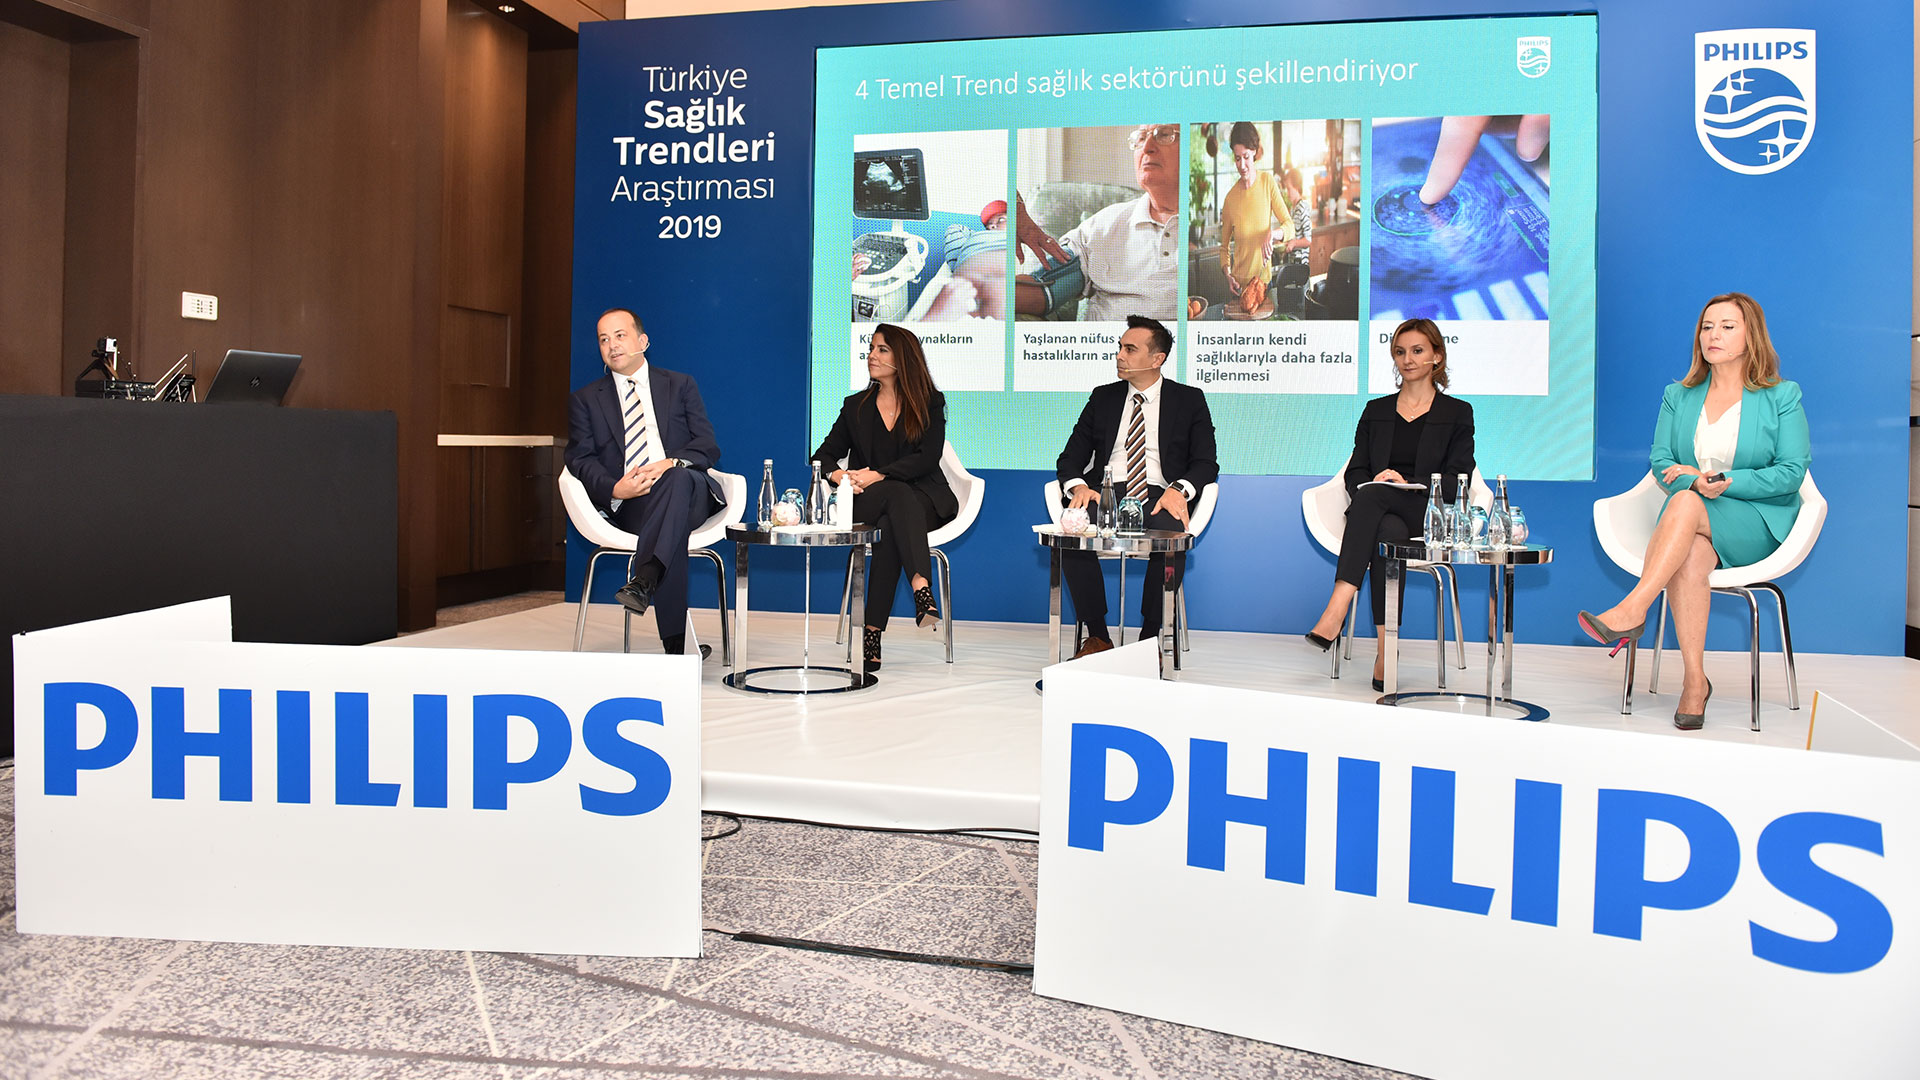 Philips Türkiye Sağlık Trendleri Araştırması 2019 (yeni bir pencerede açılır)